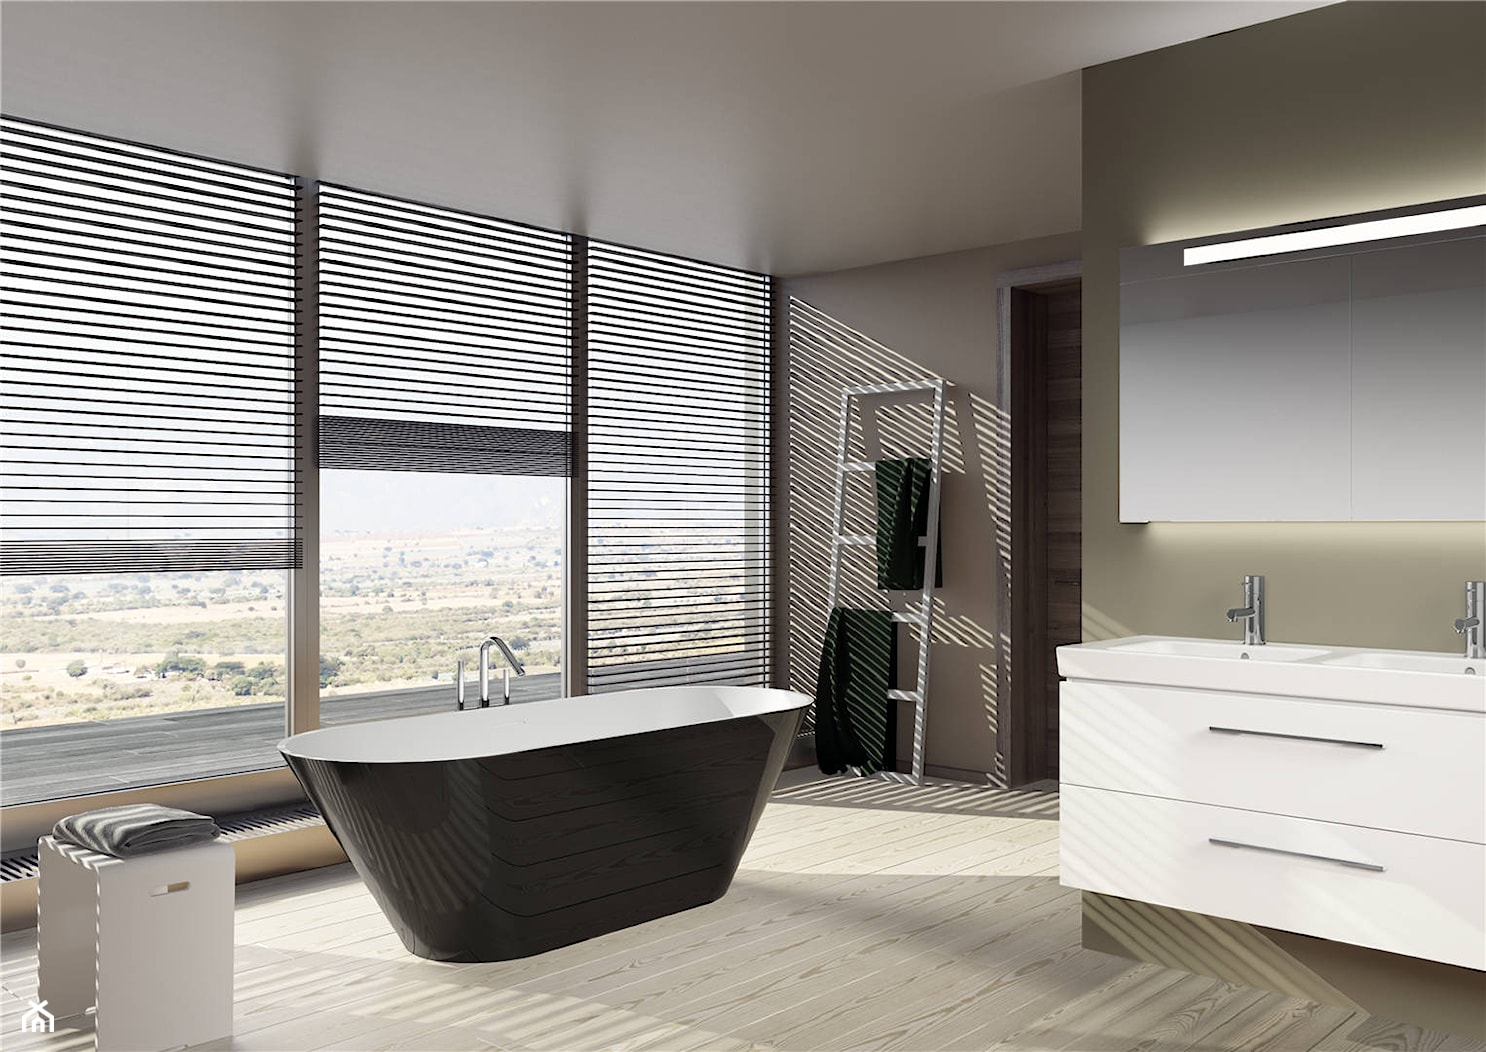 Wanny Solid Surface - Duża z lustrem z dwoma umywalkami łazienka z oknem, styl nowoczesny - zdjęcie od RIHO - Homebook